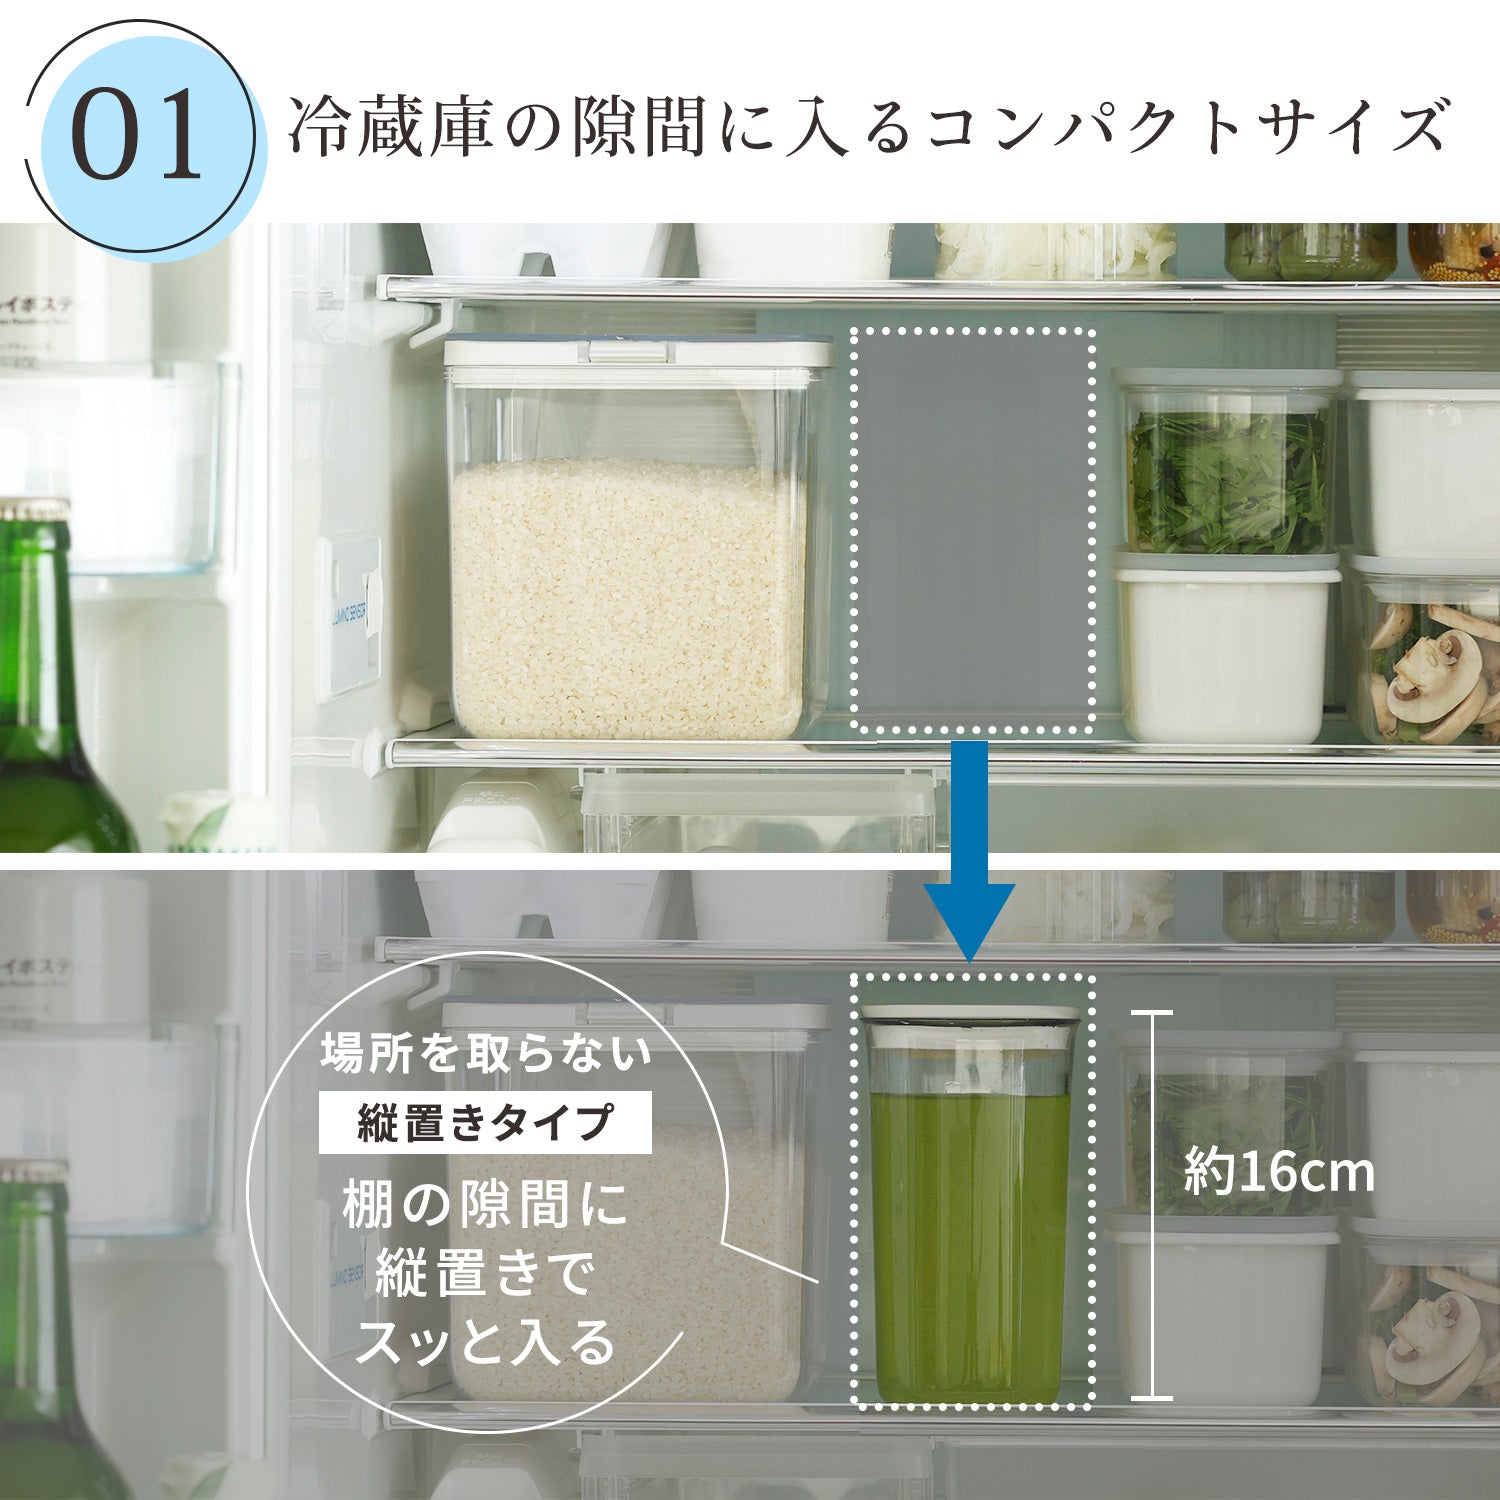 【預購】日本進口 迷你冰箱縫隙冷水瓶 (1L) - Cnjpkitchen ❤️ 🇯🇵日本廚具 家居生活雜貨店